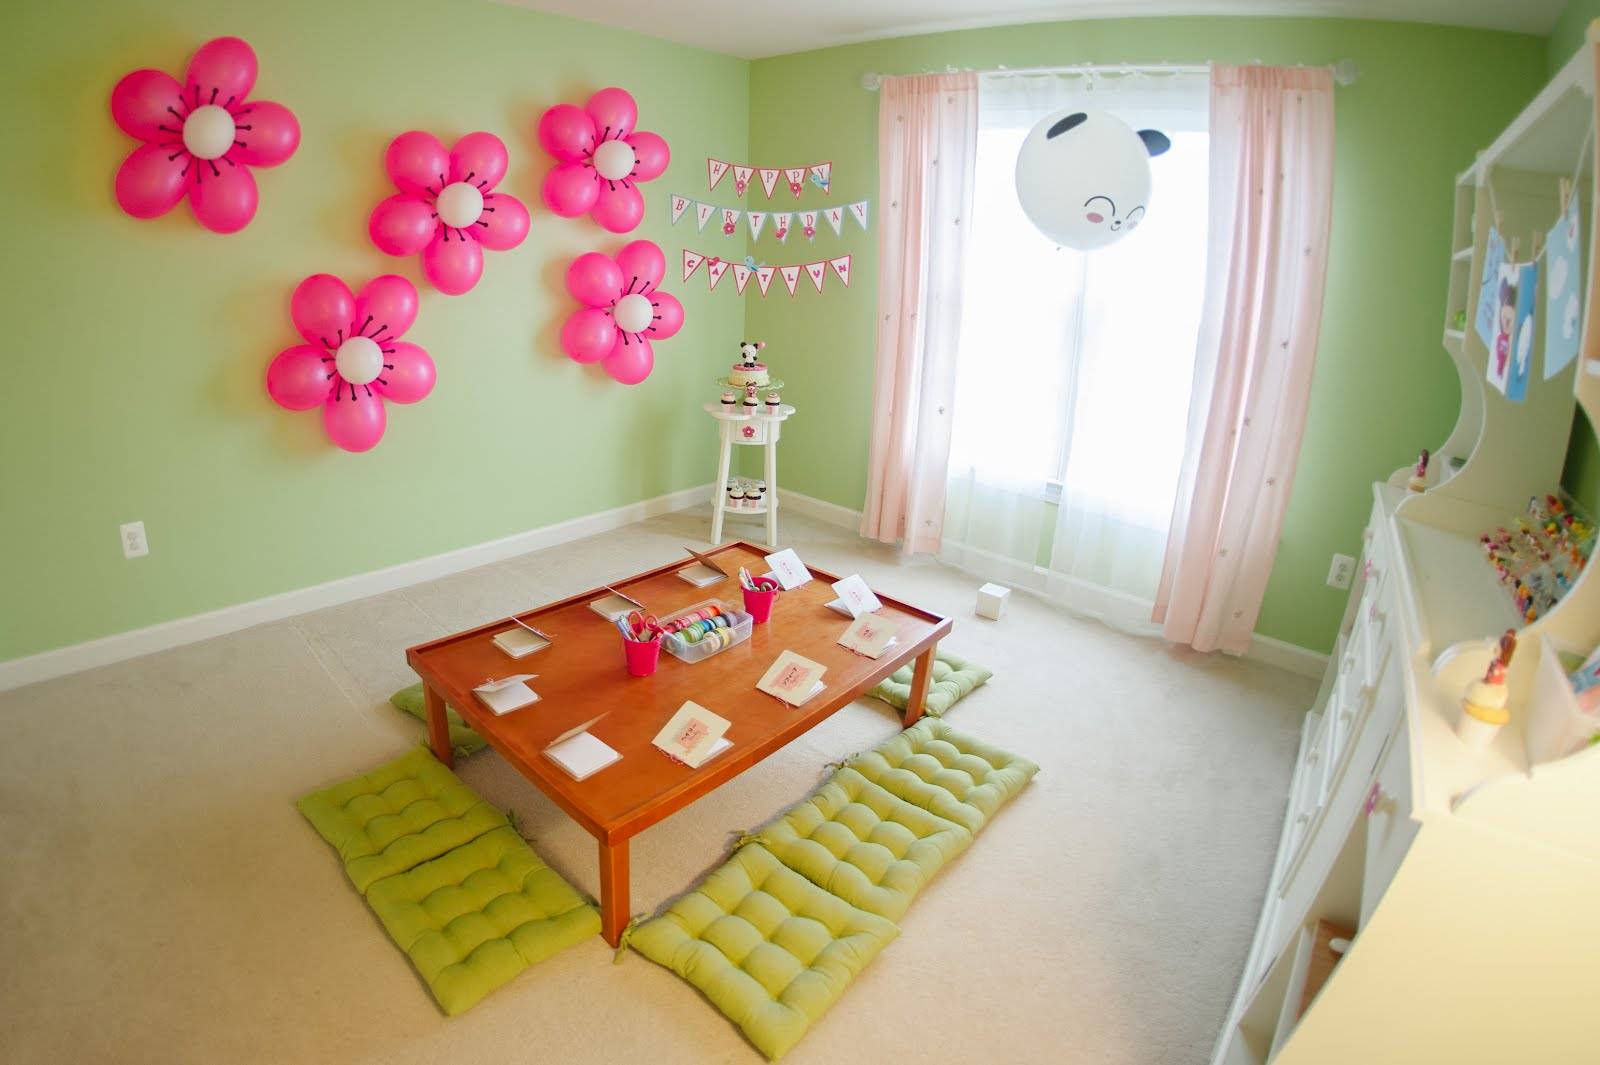 Как украсить комнату на день рождения ребенка? (180+ фото идей)